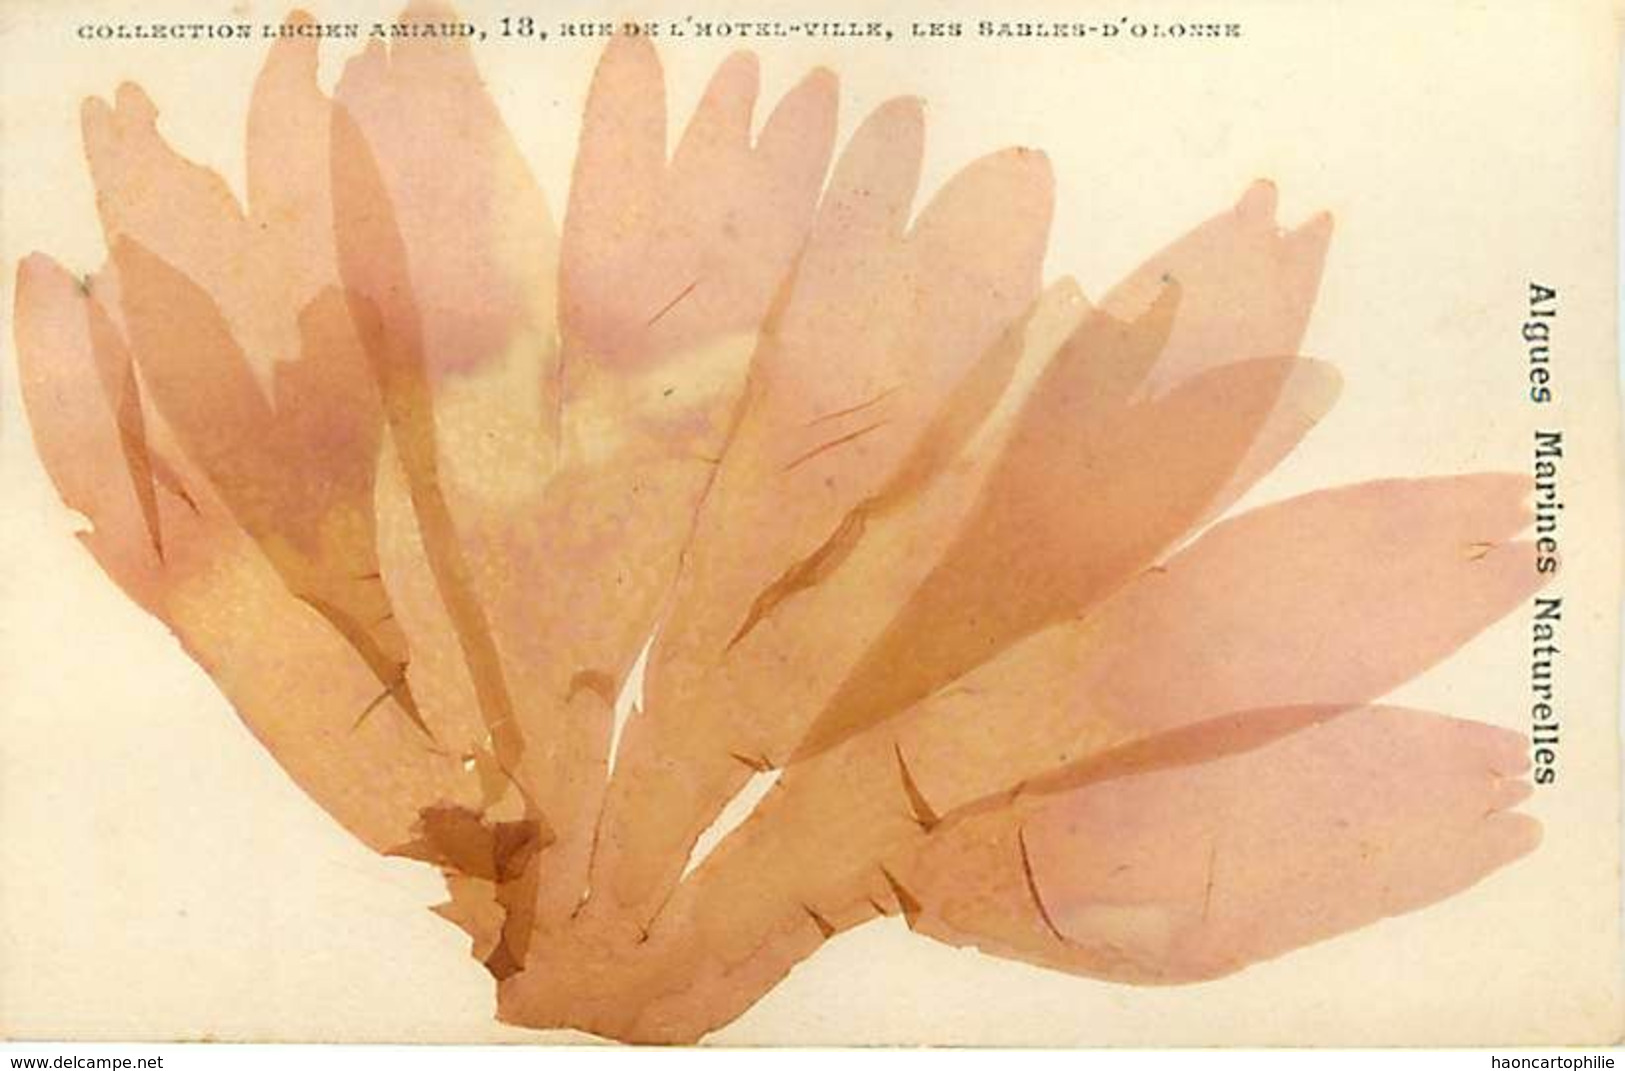 Algues marines naturelles  lot de 30 cartes éditeur Lucien Amiaud les Sables d'olonne